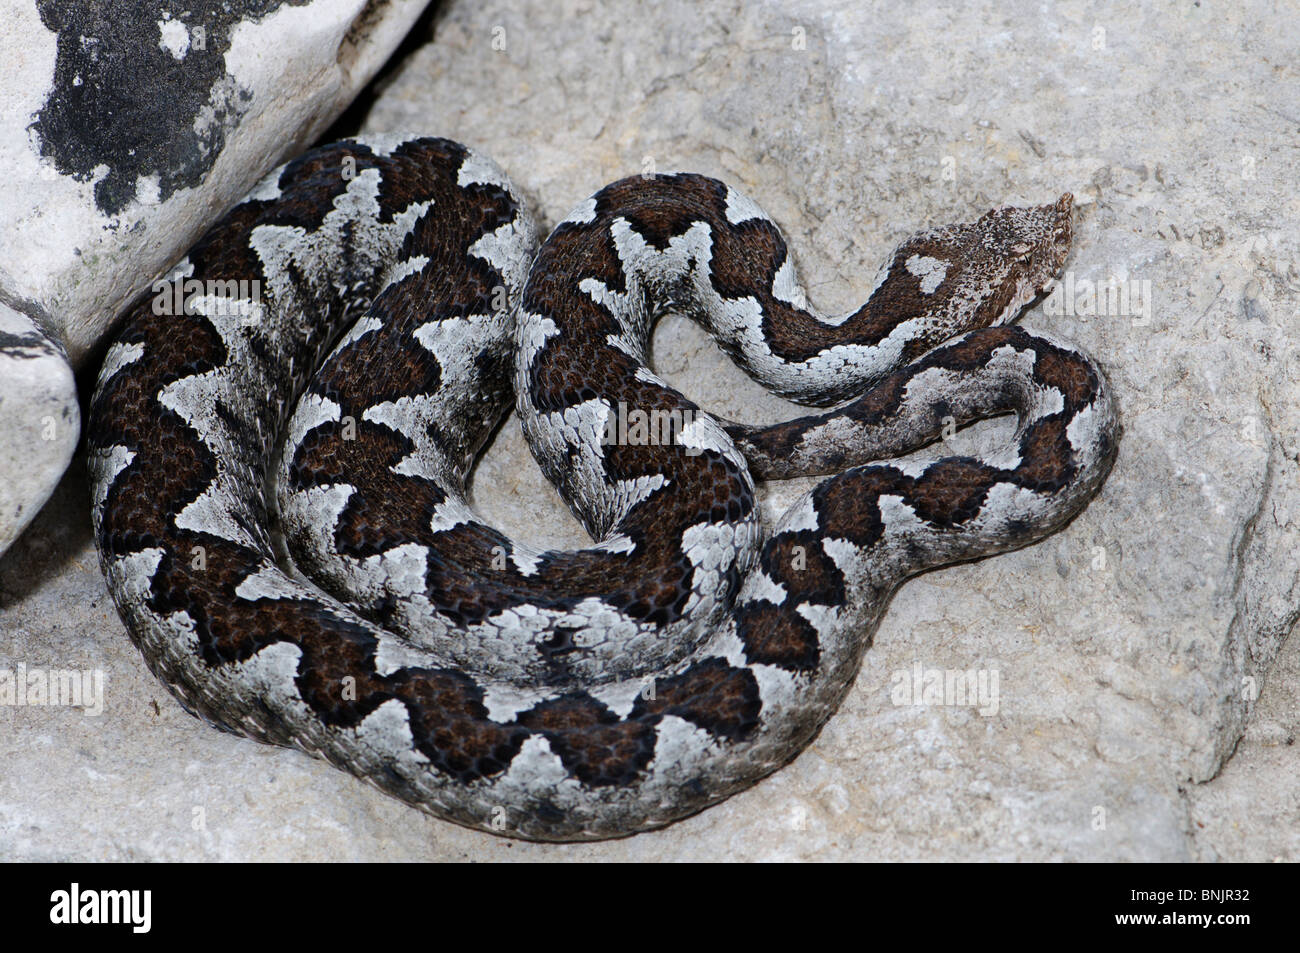 https://c8.alamy.com/comp/BNJR32/viper-vipers-adder-adders-nose-horned-viper-vipera-ammodytes-snake-BNJR32.jpg